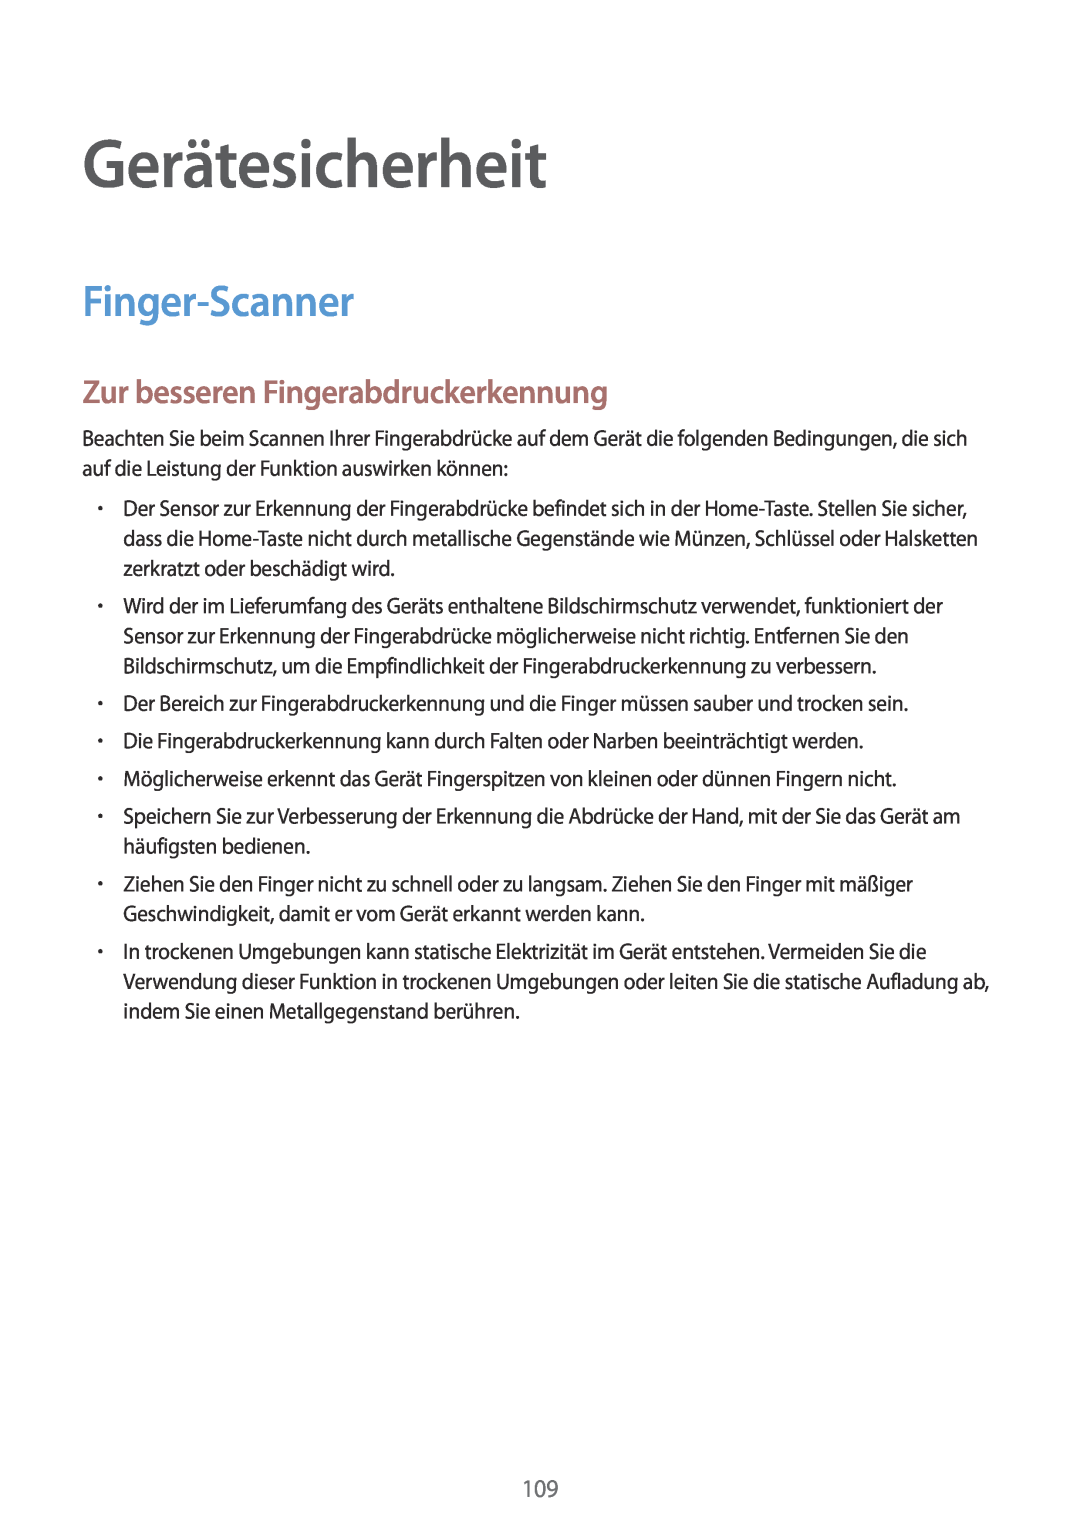 Samsung SM-G901FZKADTM, SM-G901FZKACOS manual Gerätesicherheit, Finger-Scanner, Zur besseren Fingerabdruckerkennung 